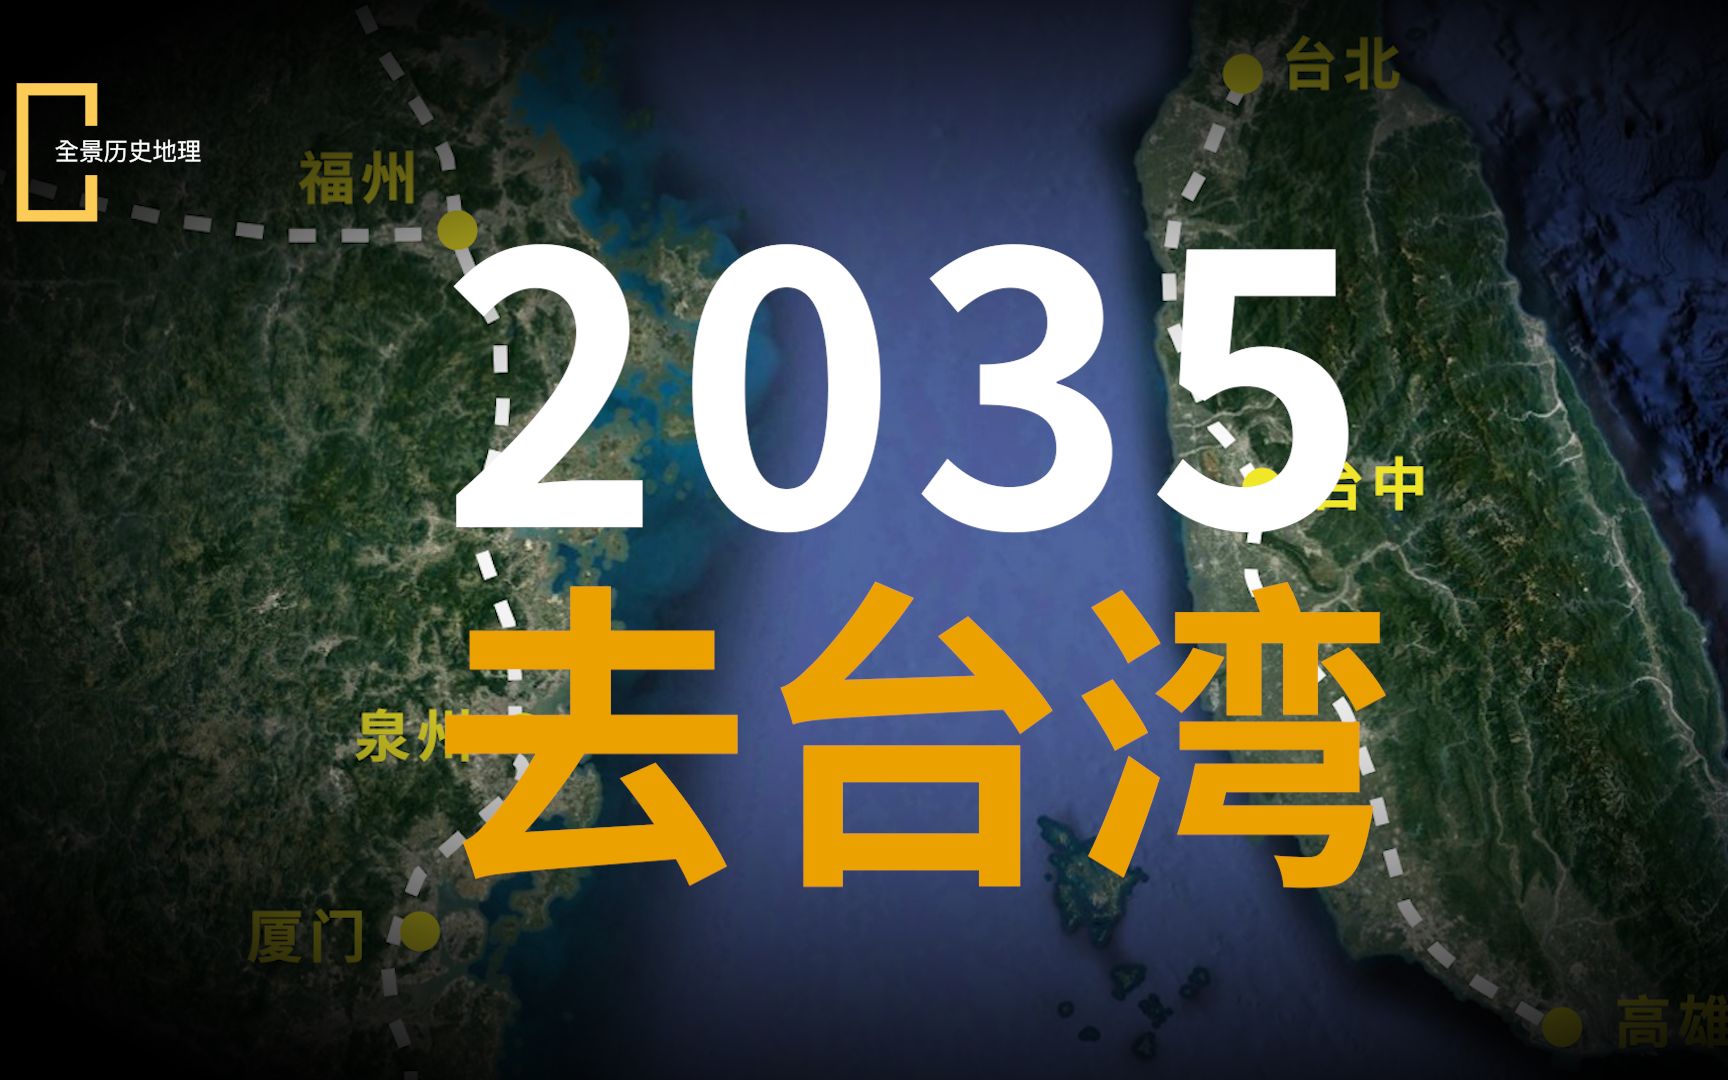 桌舞2035去台湾图片